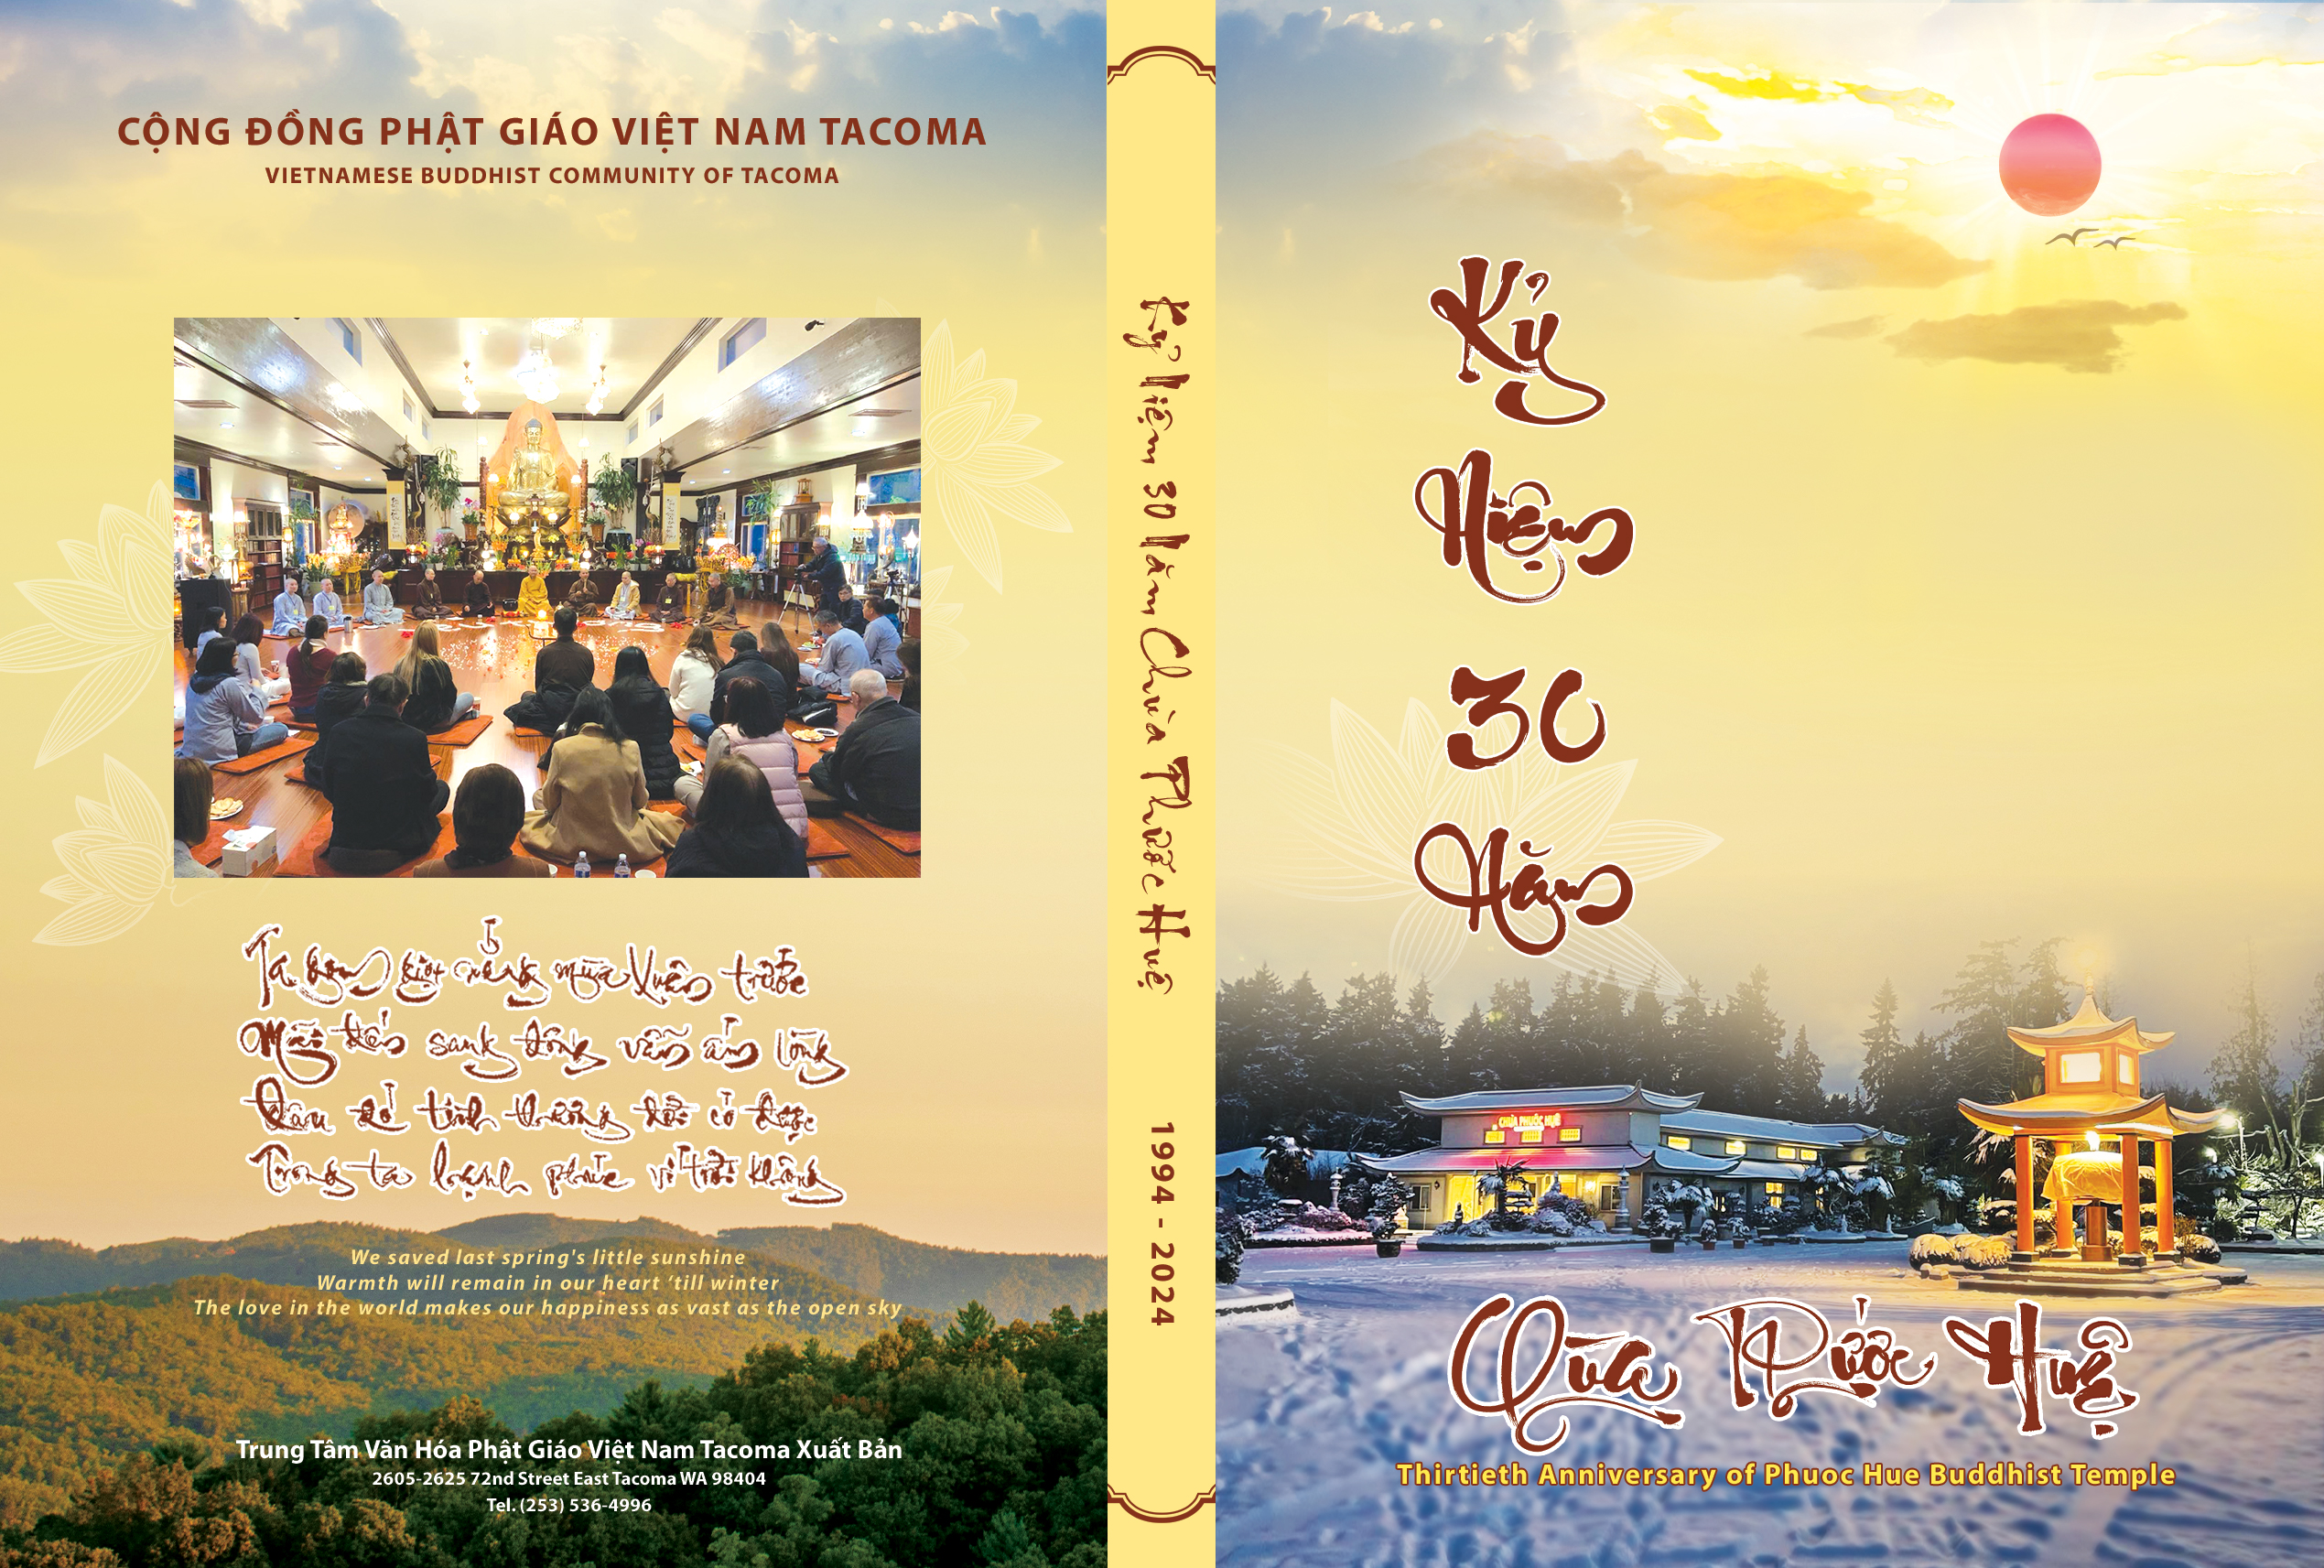 Ebook KỶ NIỆM 30 NĂM CHÙA PHƯỚC HUỆ - Thirtieth Anniversary of Phuoc Hue Buddhist Temple (1994-2024)